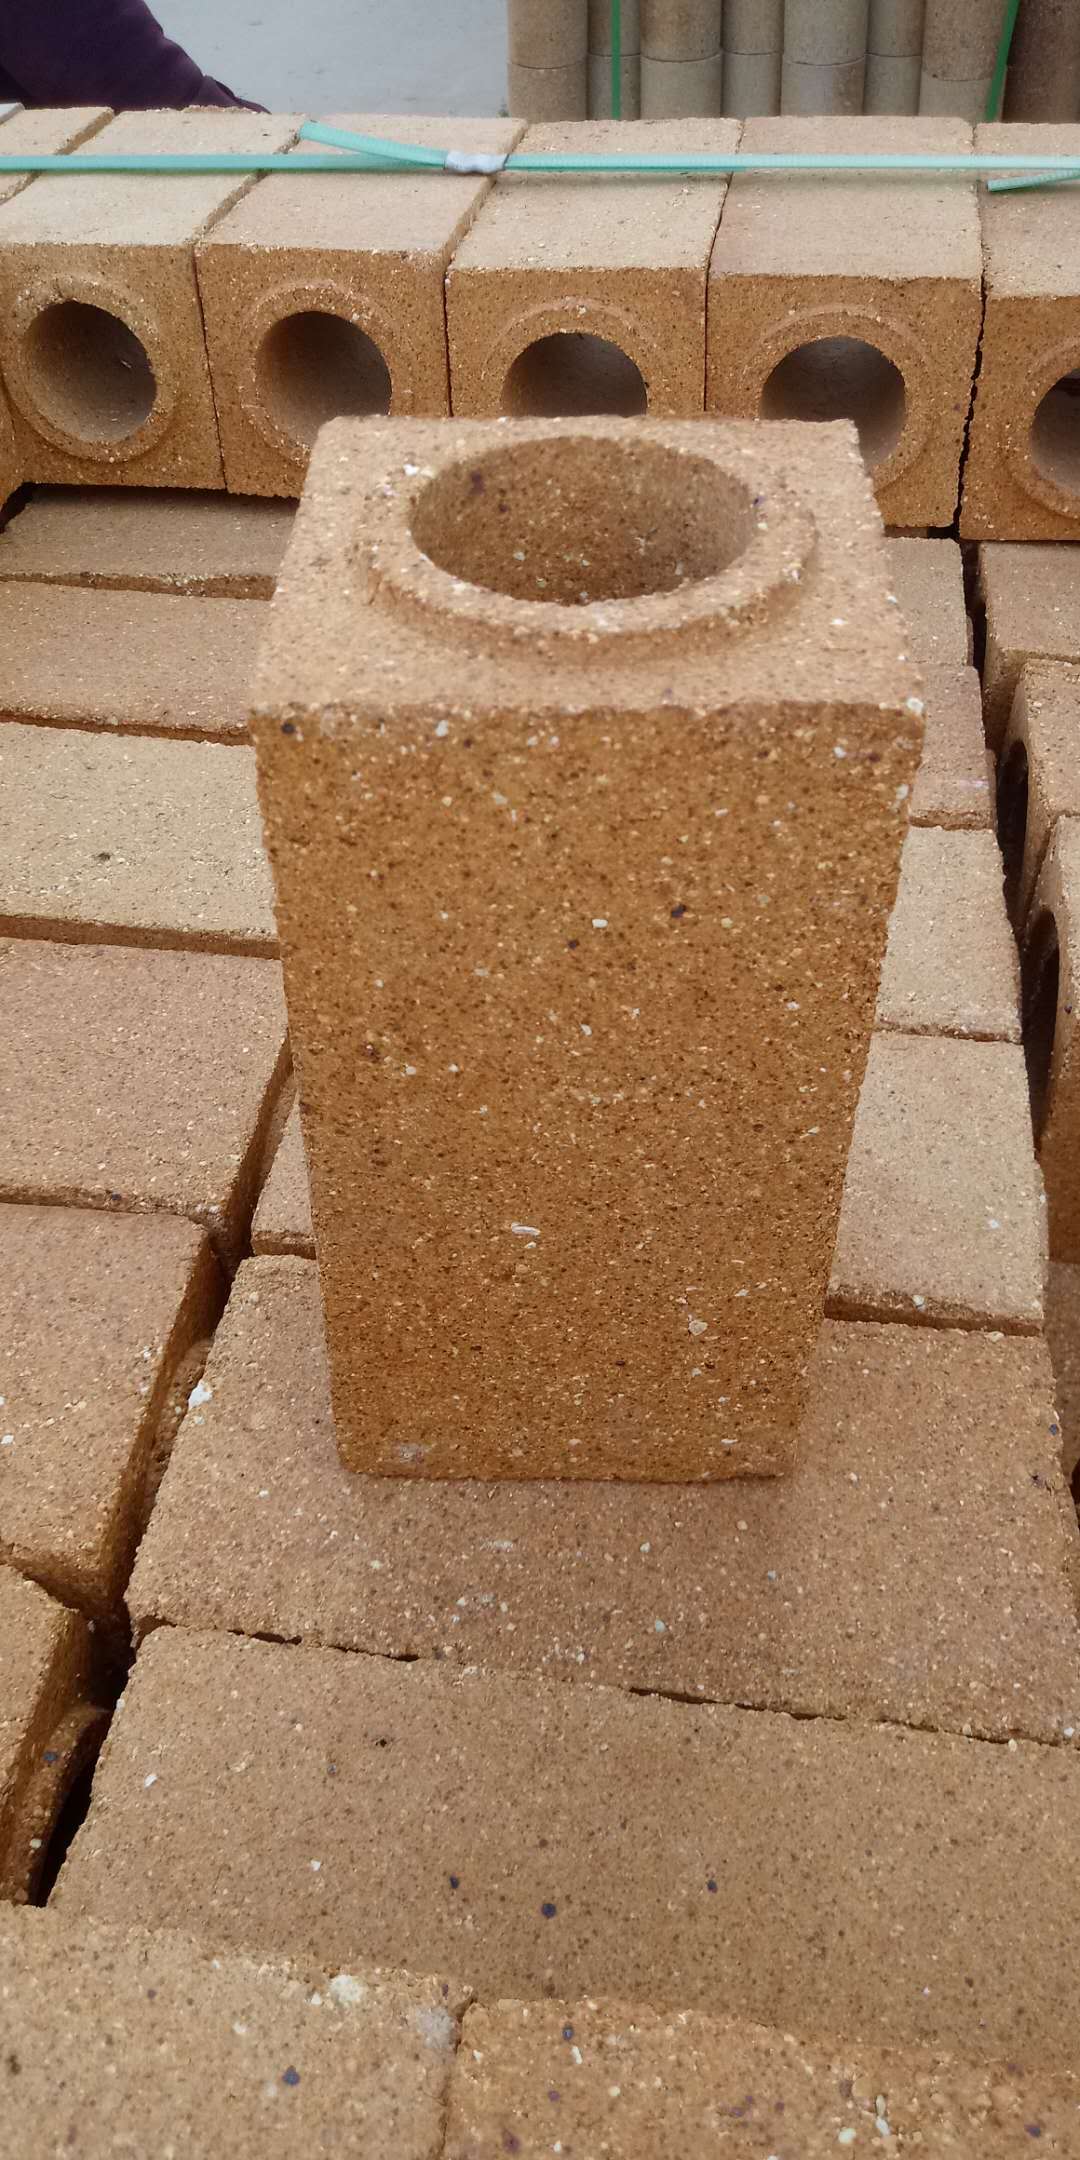 福建窑炉施工一级粘土砖信息推荐,一级粘土砖